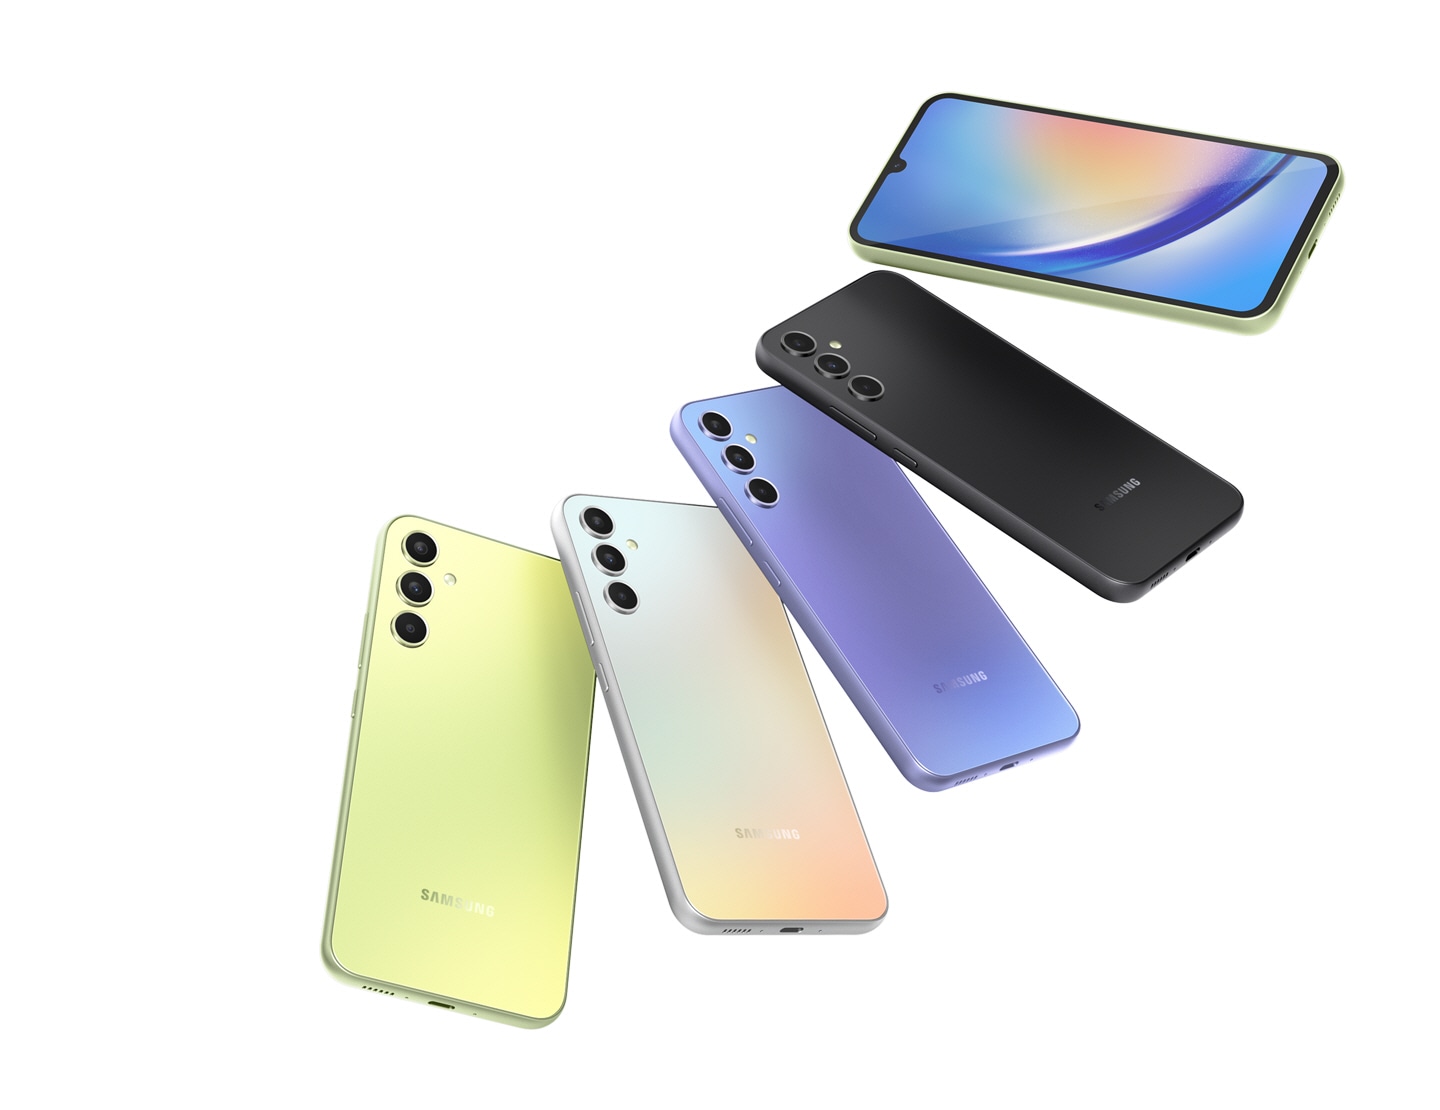 Pet telefonov Galaxy A34 5G, postavljenih kot pahljača. Štiri naprave v svetlo zeleni, srebrni, svetlo vijolični in črni barvi so prikazane z zadnje strani, medtem ko skrajna naprava v svetlo zeleni barvi prikazuje zaslon.  